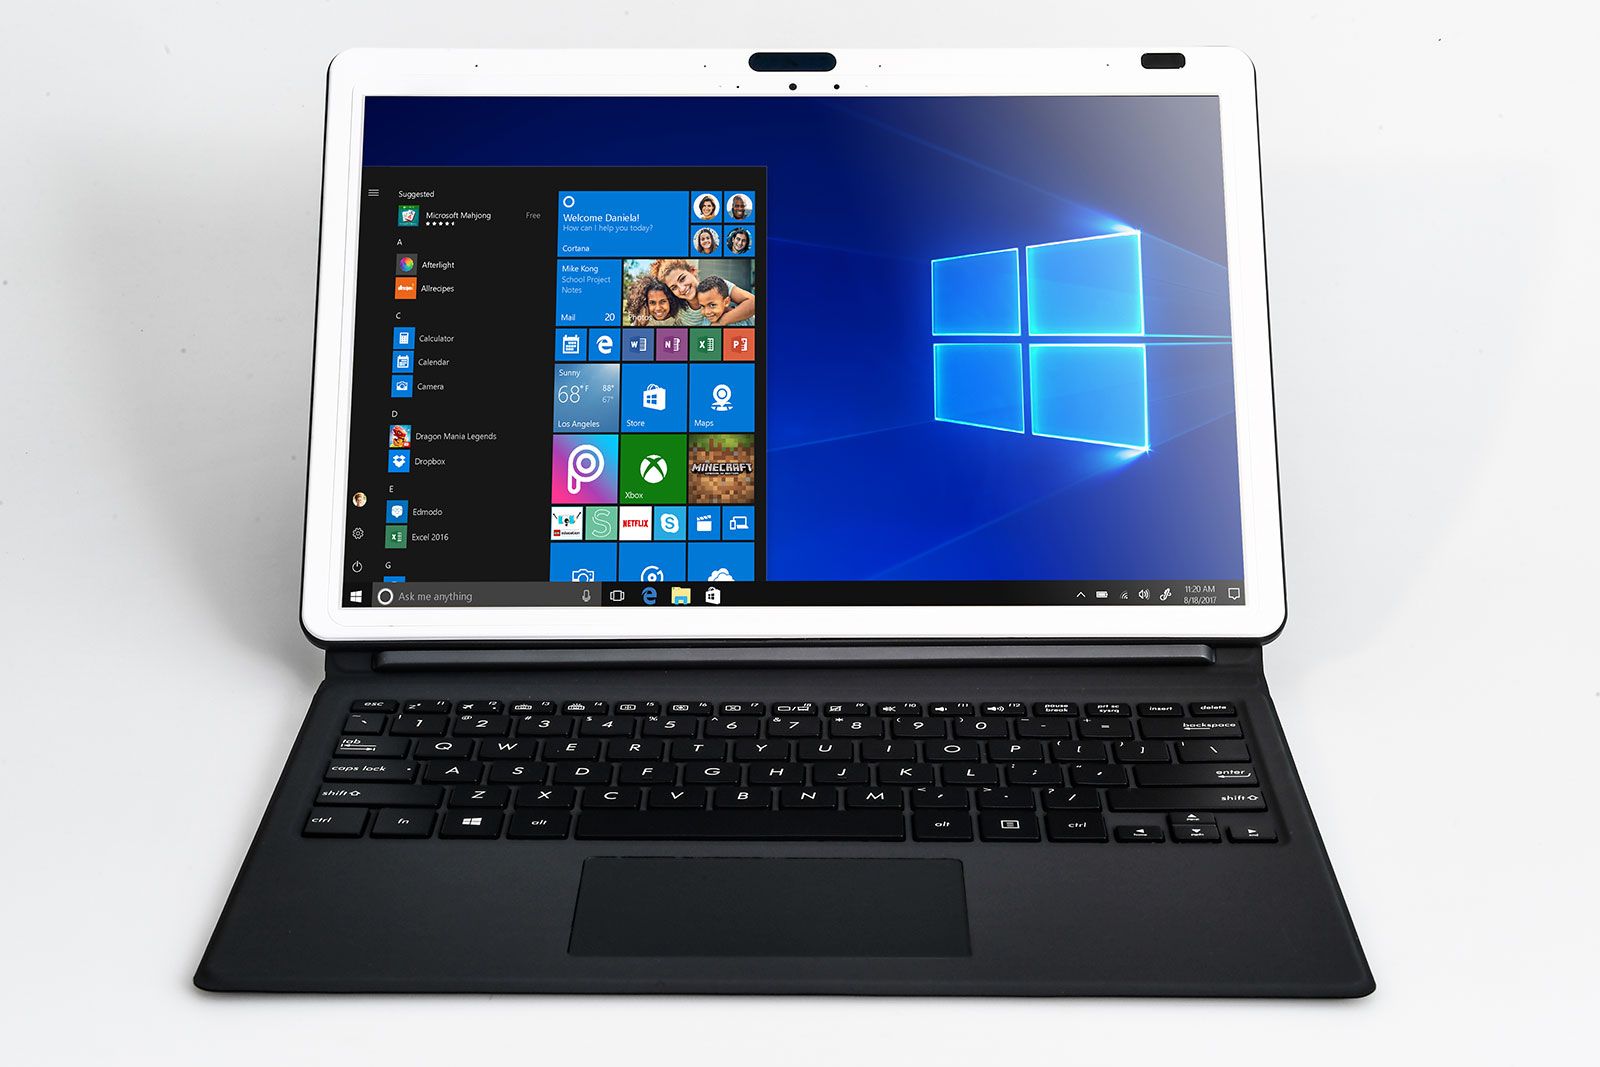 Qualcomm Snapdragon 1000 details leak designed for Windows 10 laptops image 1